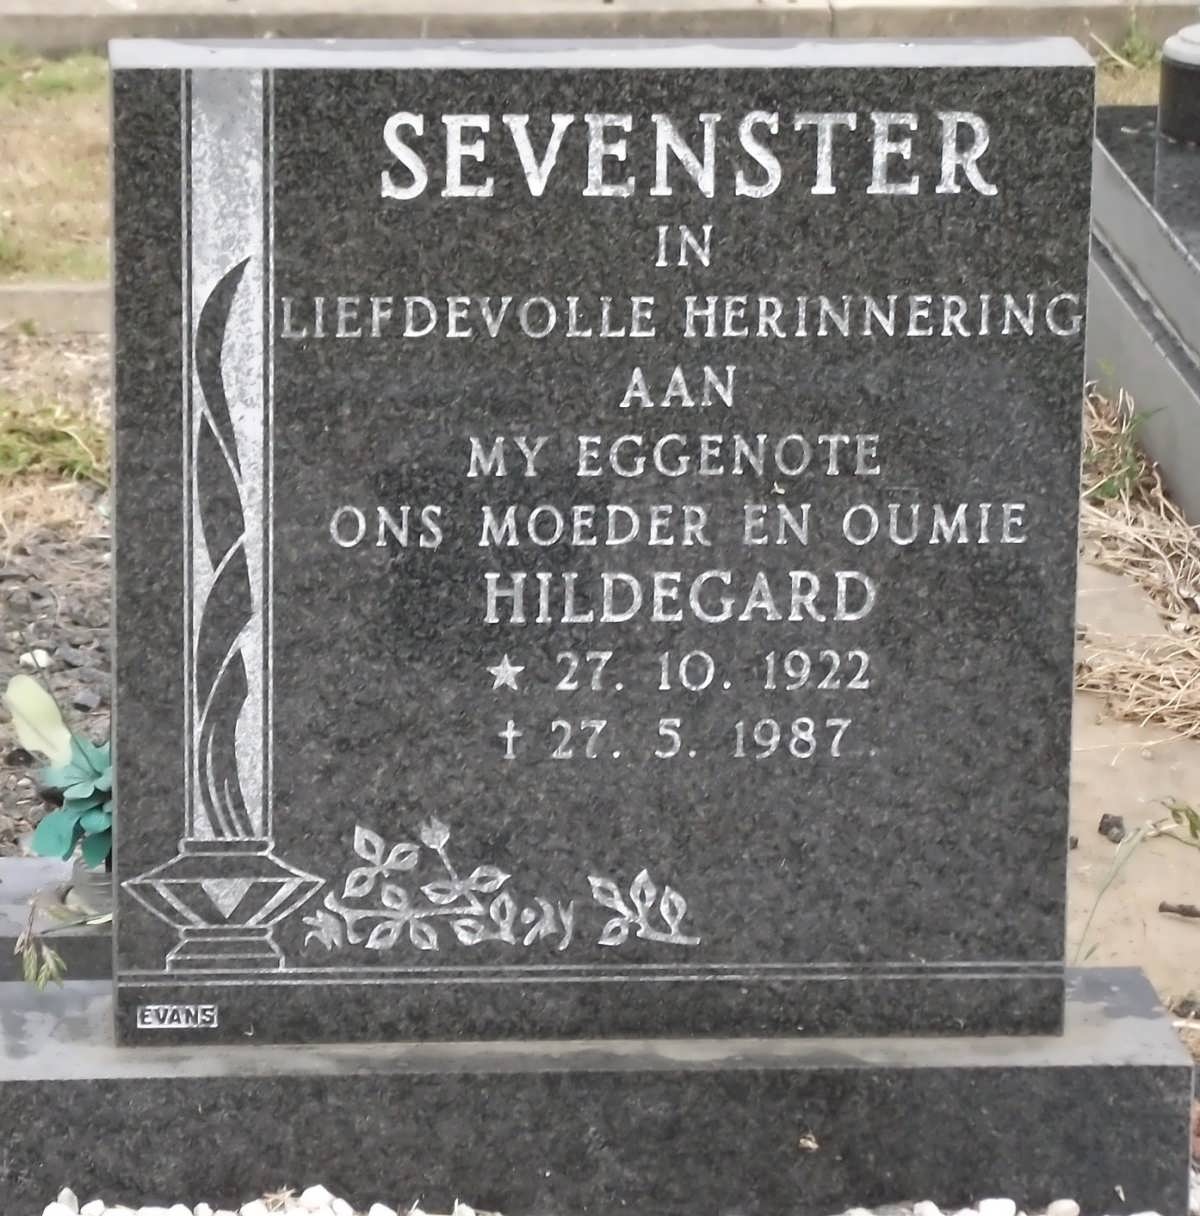 SEVENSTER Hildegard 1922-1987